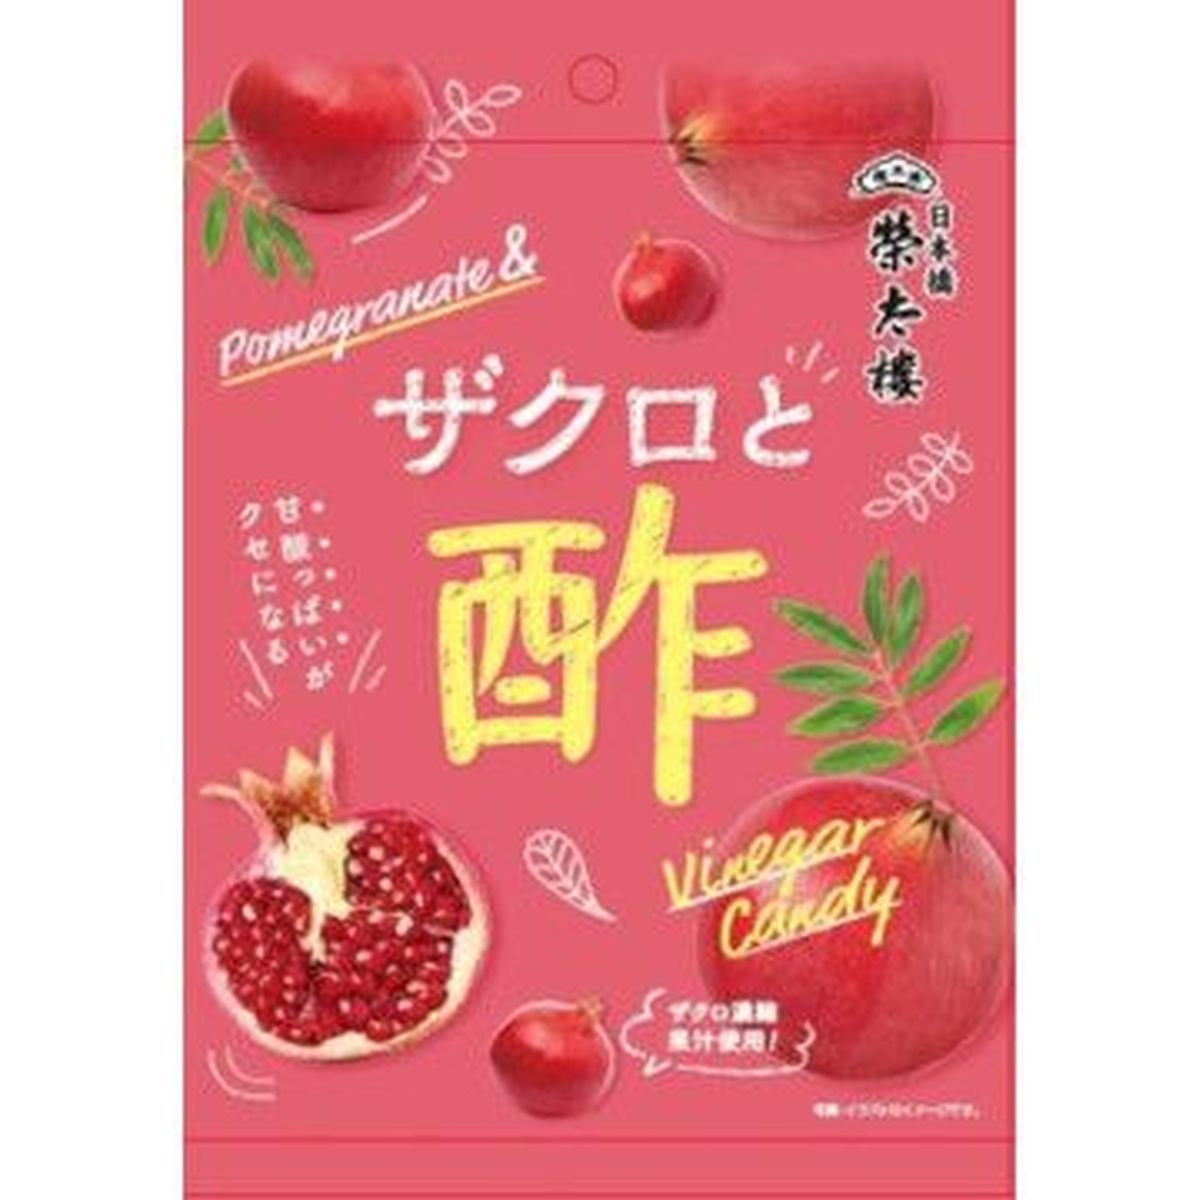 【6個入リ】榮太樓 ザクロト酢キャンディー 70g